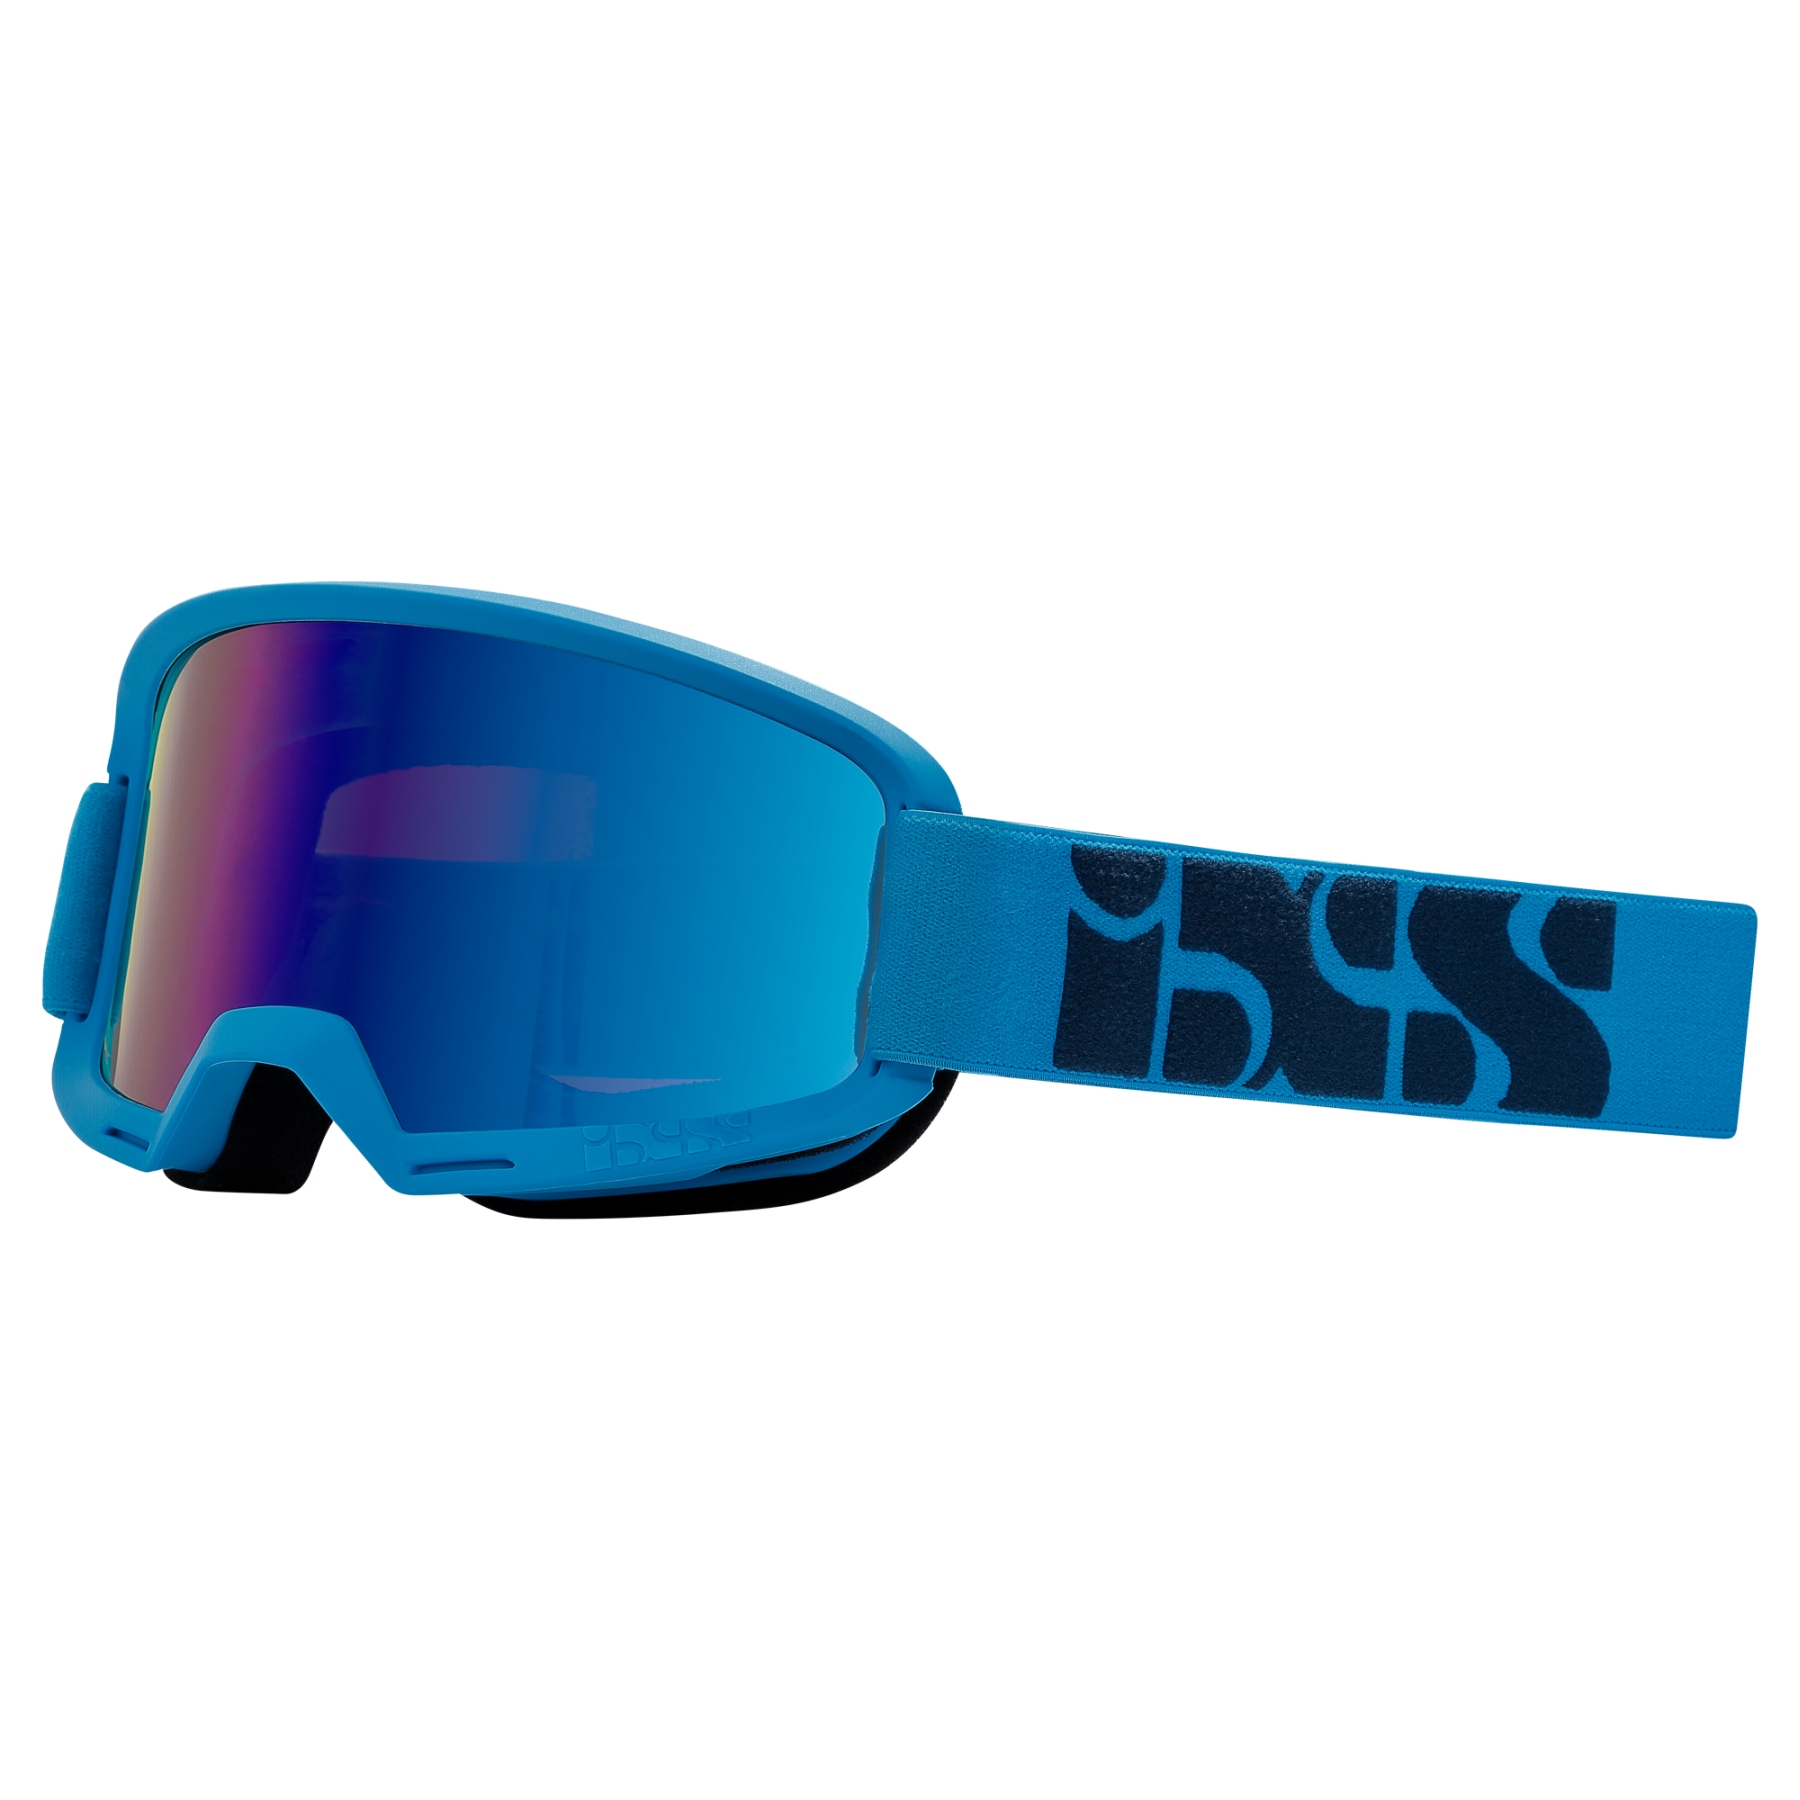 Produktbild von iXS Hack Race Mirror Goggle Bikebrille - racing blue